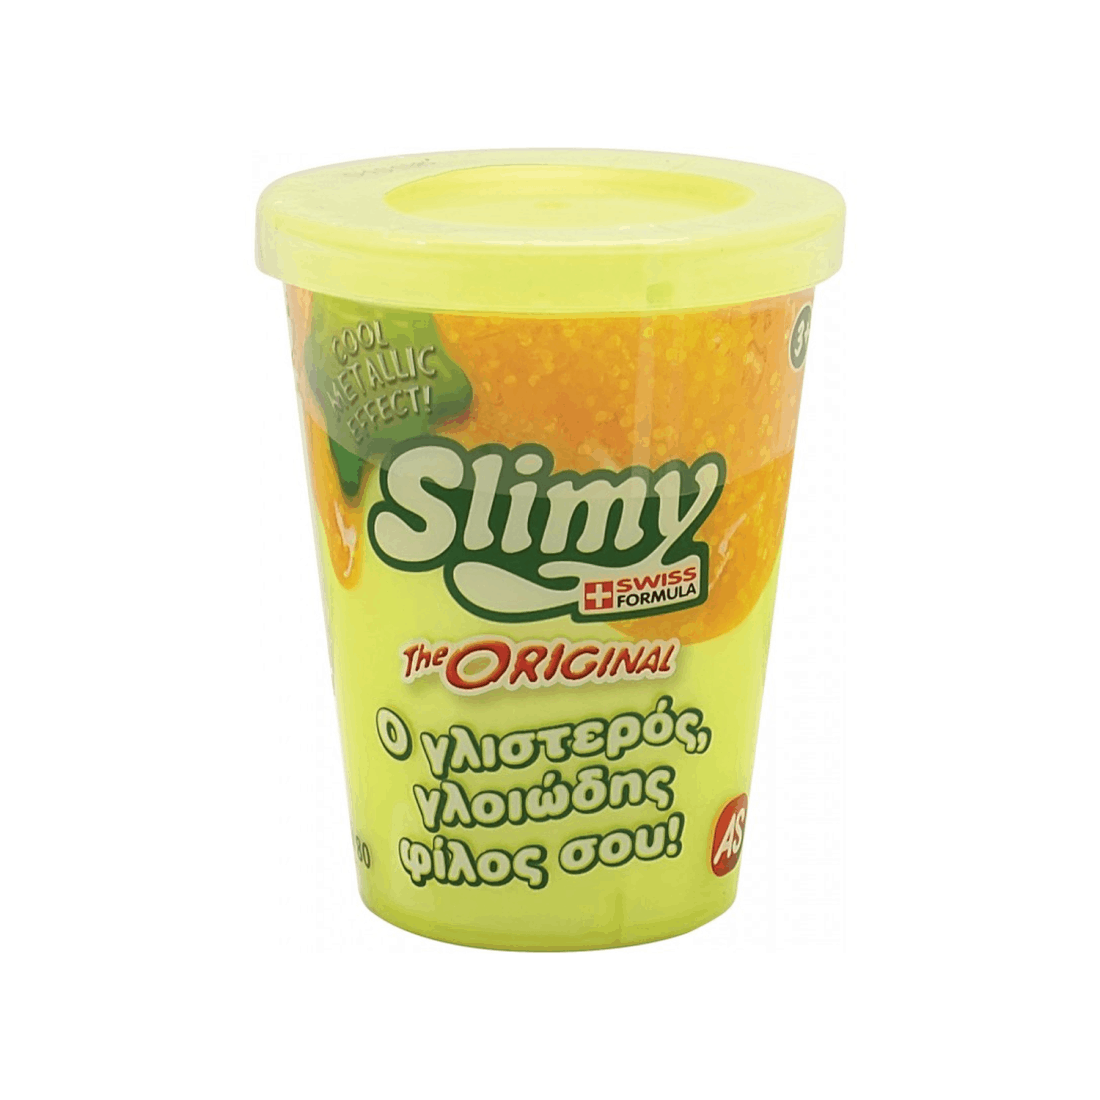 Χλαπατσα Original Slimy Metallic - Κίτρινη